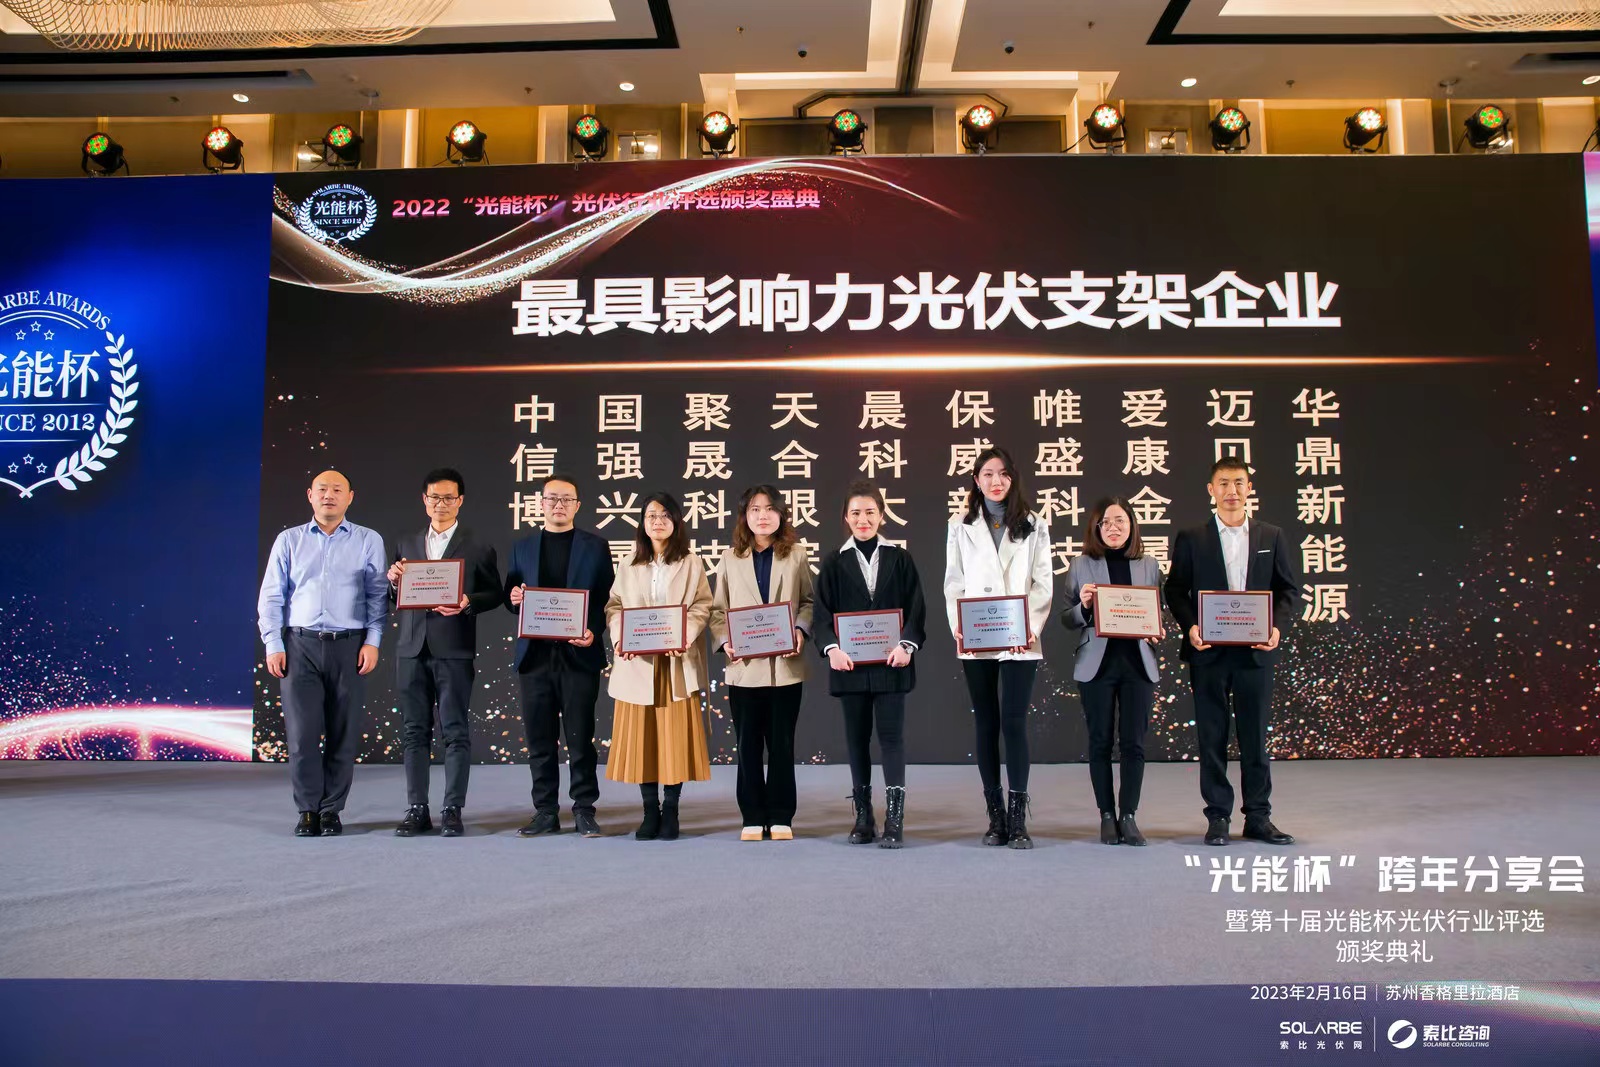 Поздравляем!Shanghai CHIKO выиграл самое влиятельное предприятие по производству солнечных кронштейнов в 2022 году.